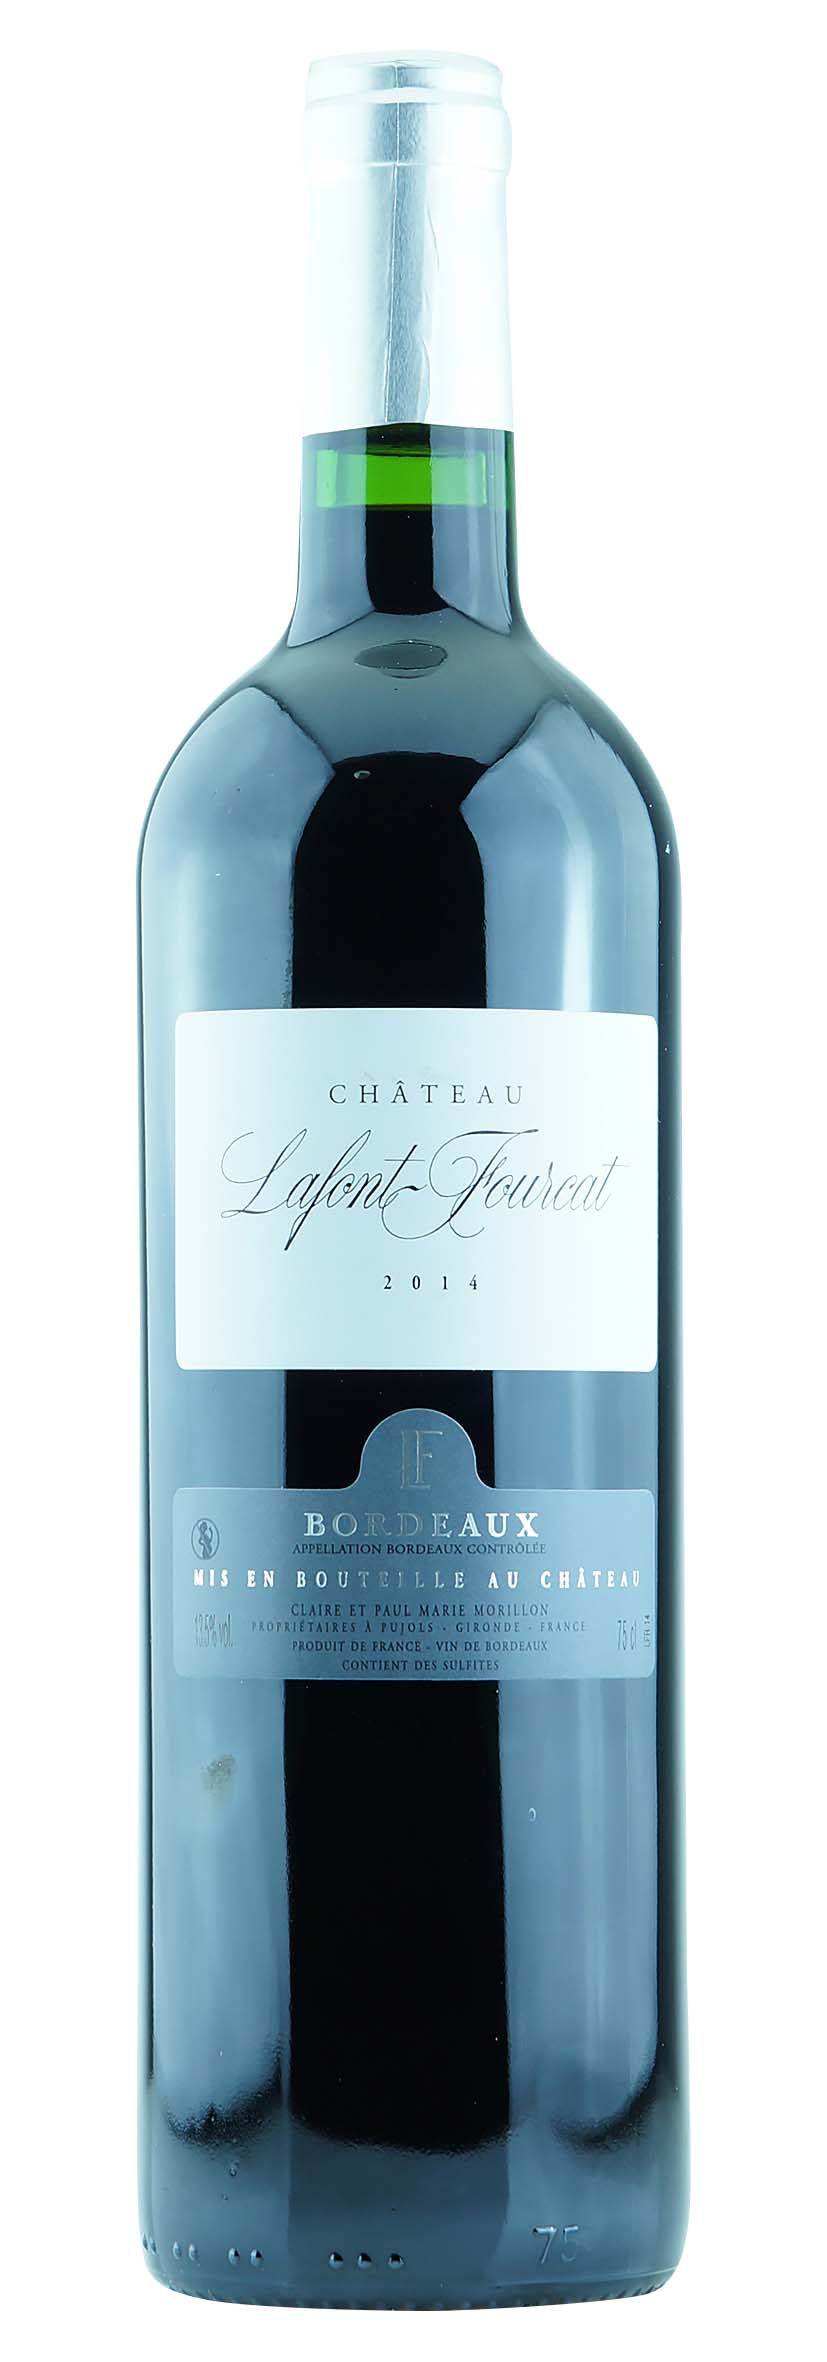 Bordeaux AOC Lafont Fourcat 2014